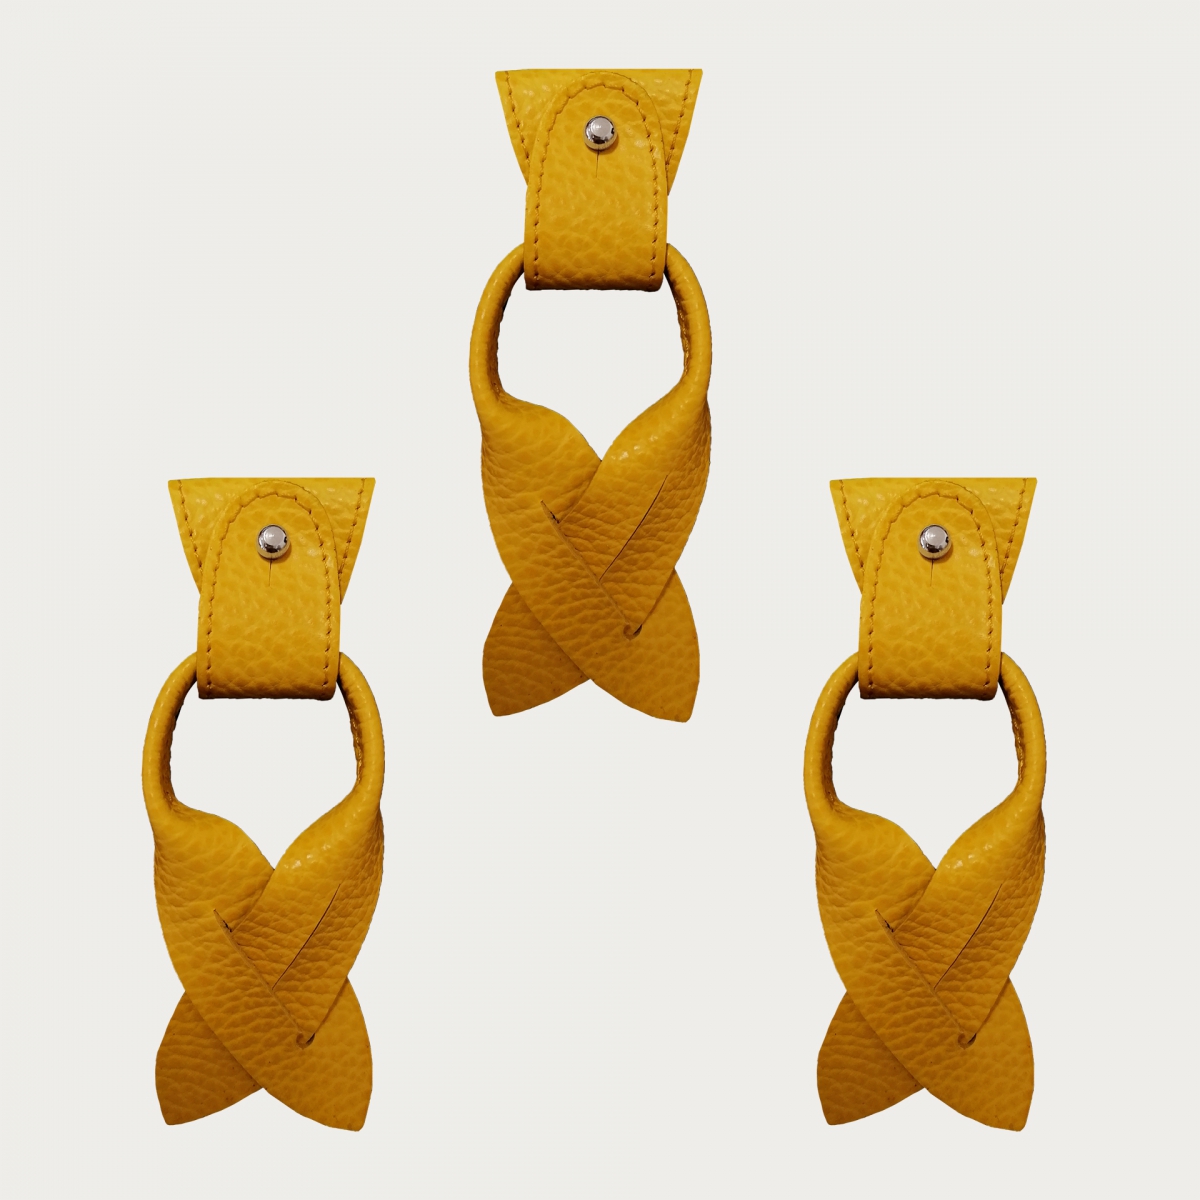 BRUCLE SErsatz für Y-förmige Hosenträgerenden+Ohrenstreifen für Knopfleiste, gelb